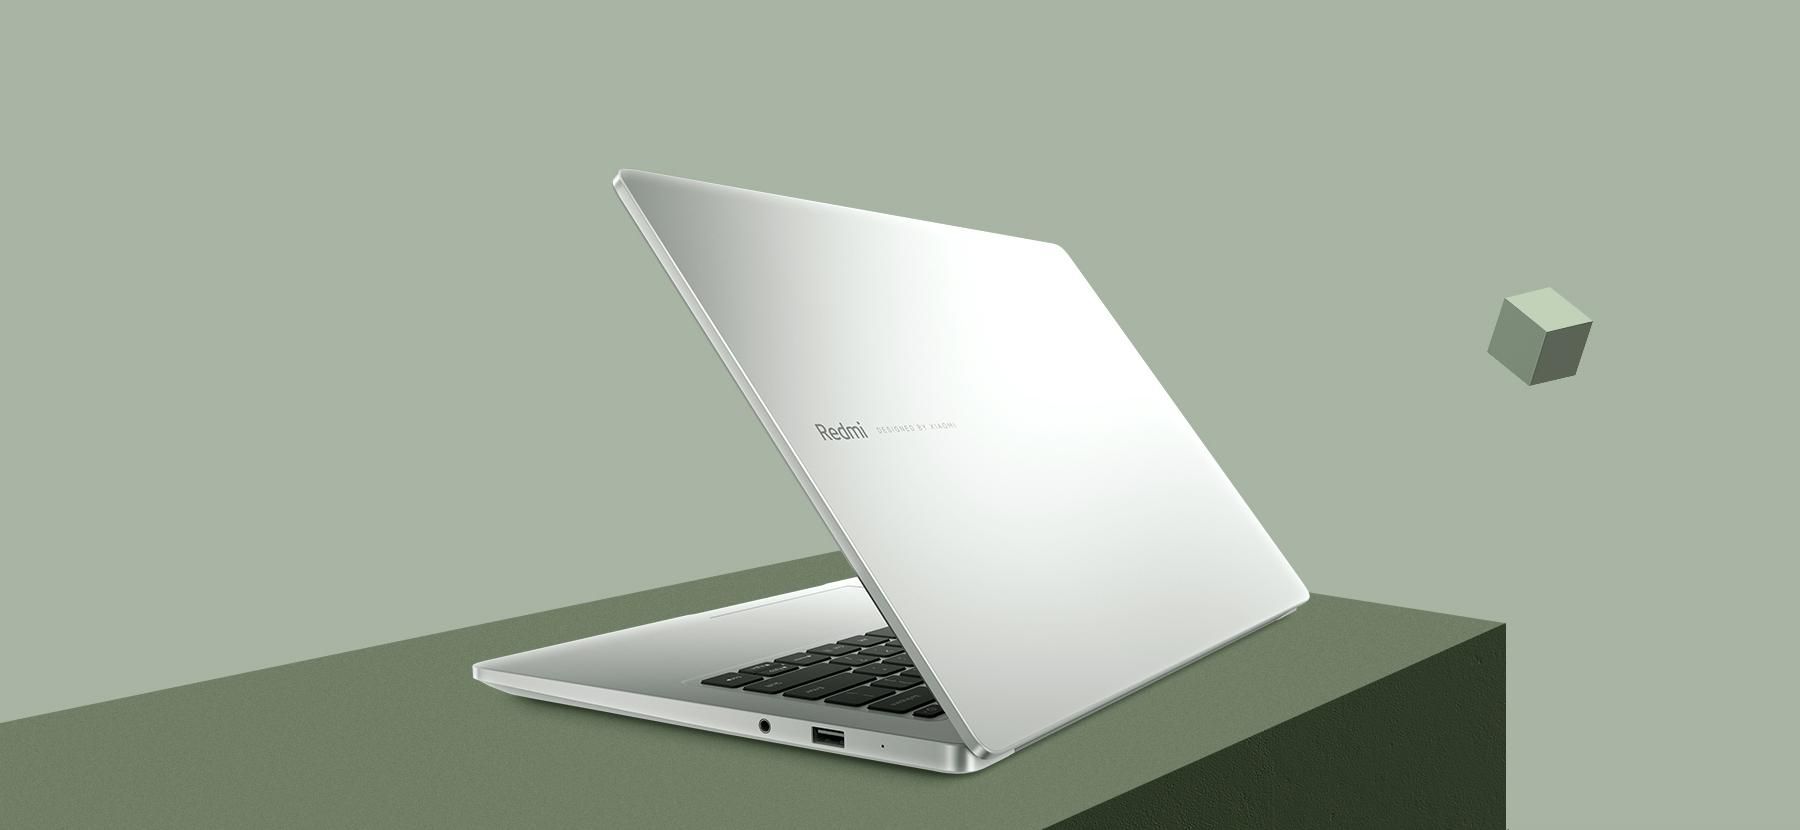 Redmi випустить "безрамковий" ноутбук: перші фото новинки